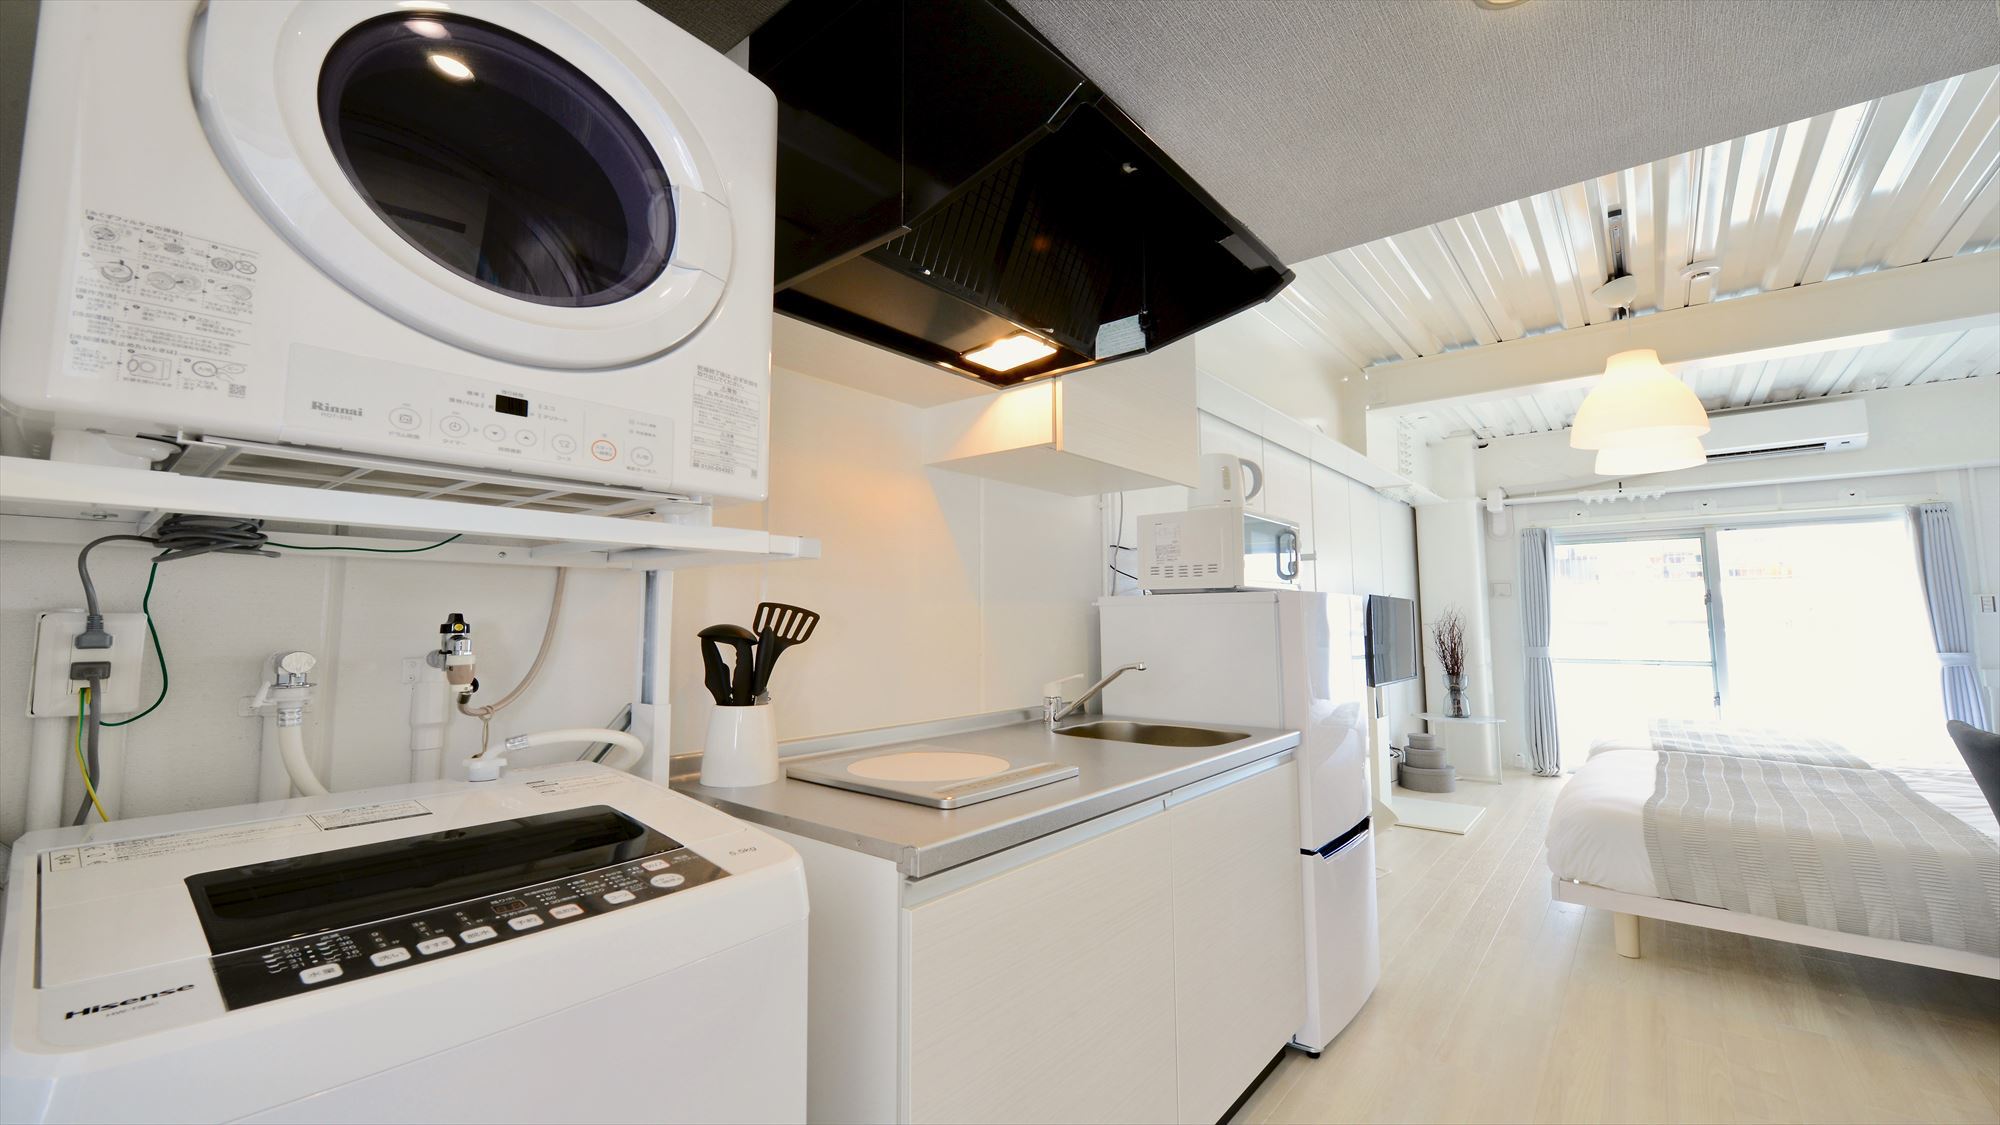 502号室キッチン&洗濯機・乾燥機